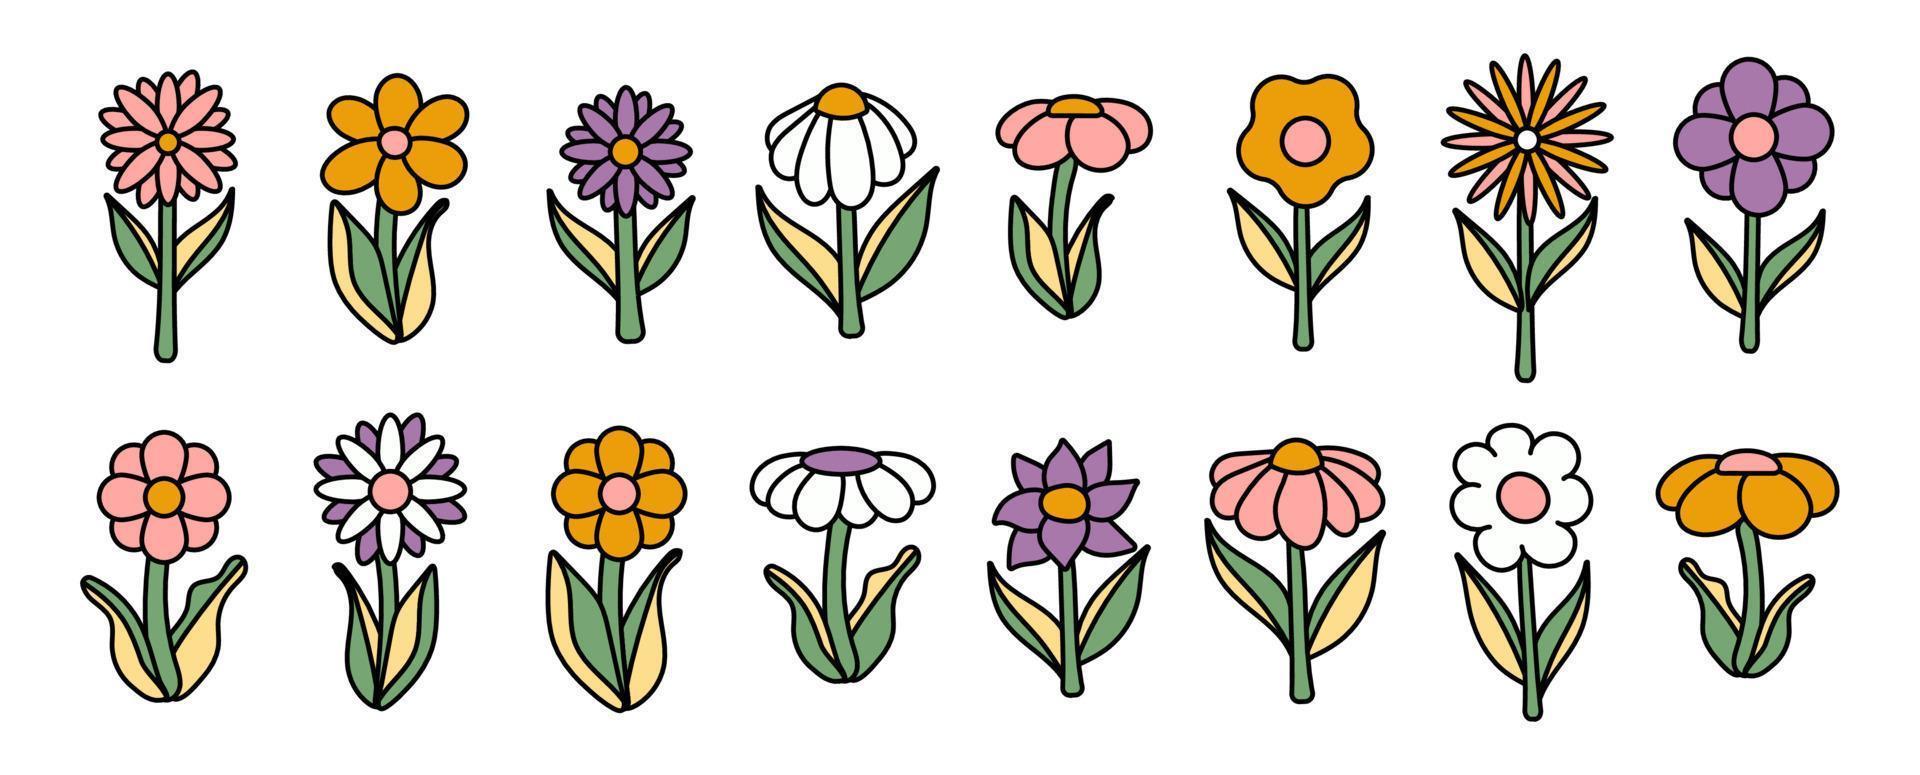 colección de flores florecientes simples al estilo hippie psicodélico de los años 70. conjunto de pegatinas gráficas en diseño retro. fondo maravilloso. ilustración vectorial aislada de trazo editable vector